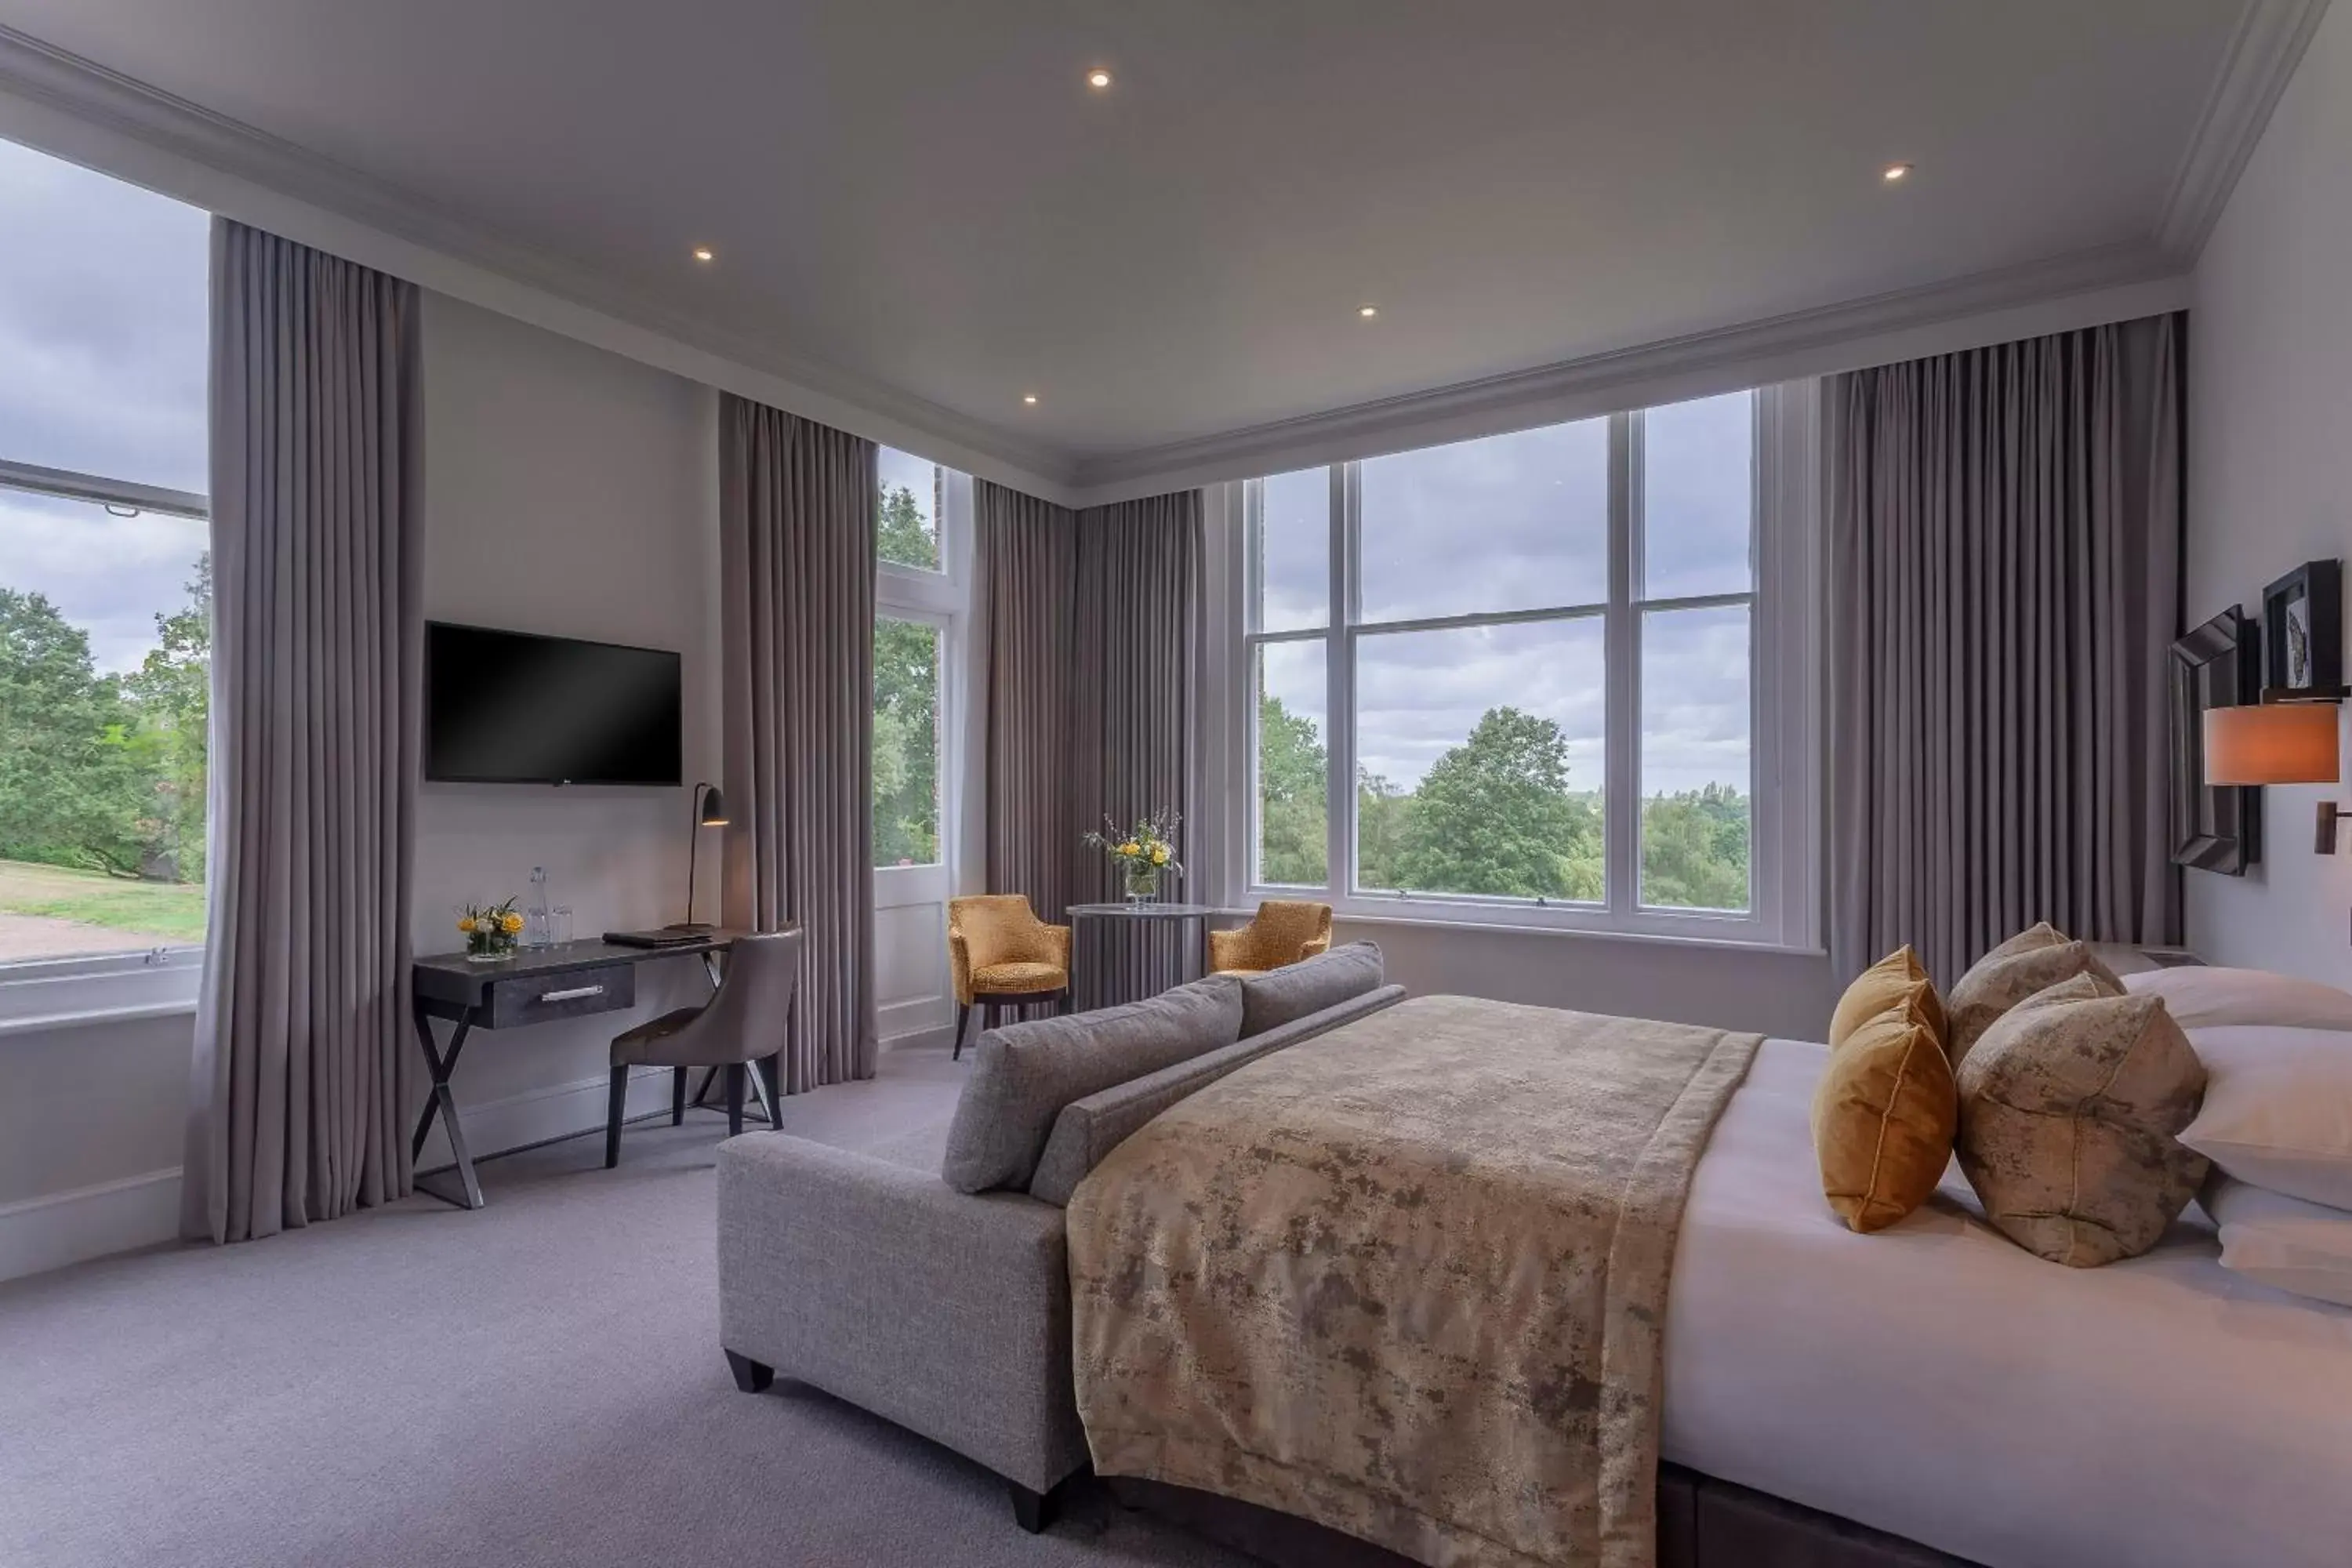 Bedroom in Oatlands Park Hotel